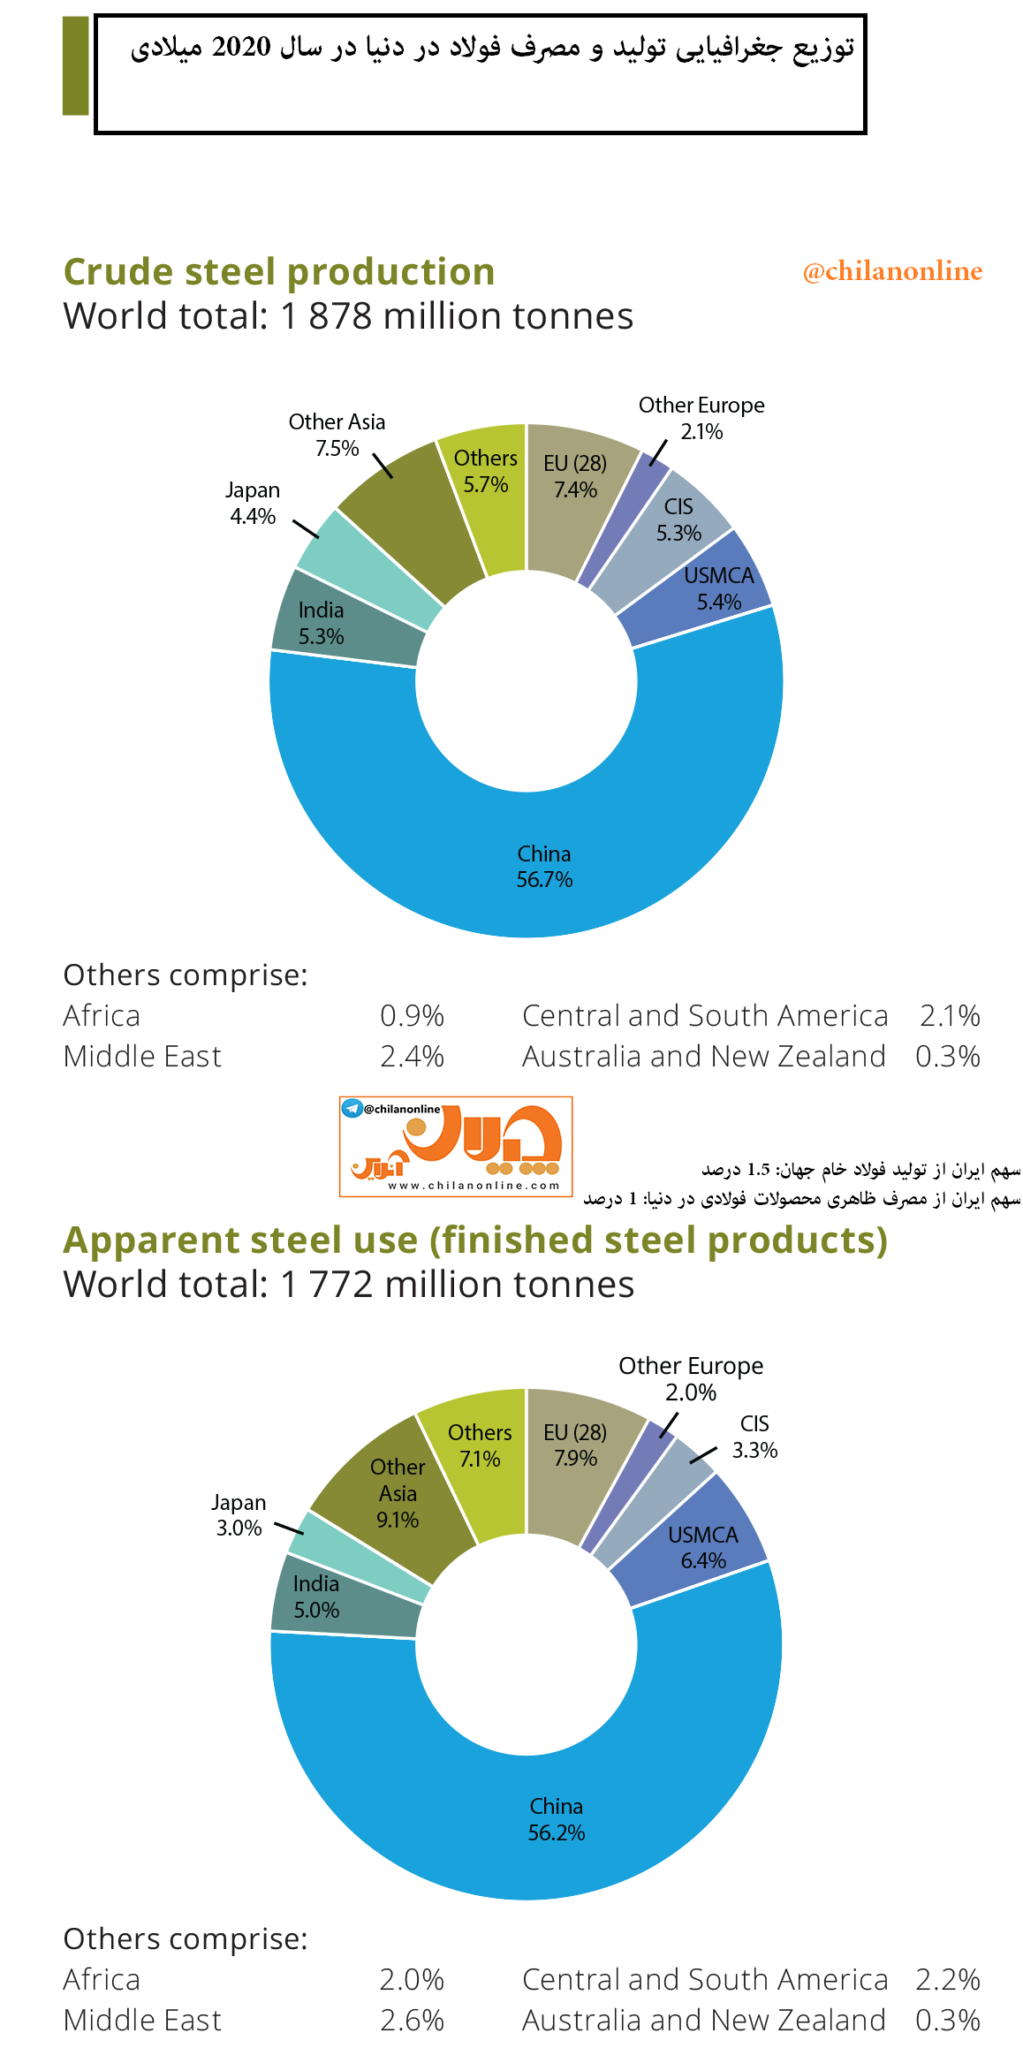 توزیع جغرافیایی تولید و مصرف فولاد دنیا در سال ۲۰۲۰ میلادی​/ سهم ایران از تولید و مصرف فولاد